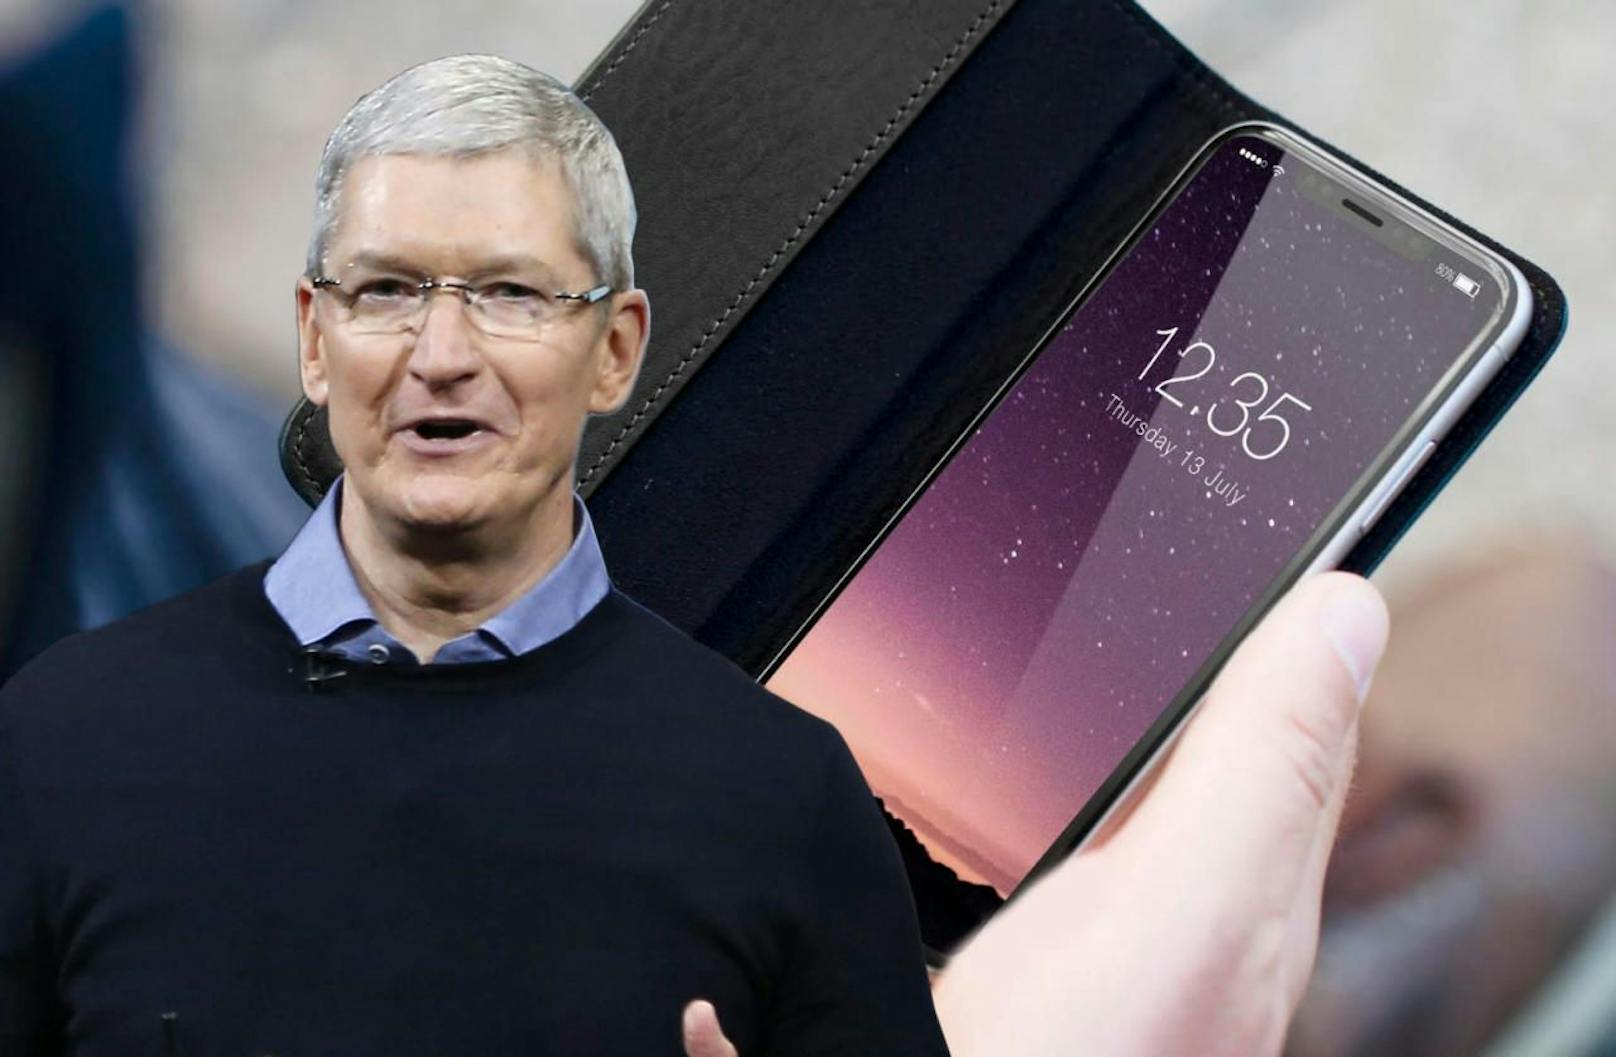 Voraussichtlich am 12. September zeigt Apple-Boss Tim Cook unter anderem neue iPhones.